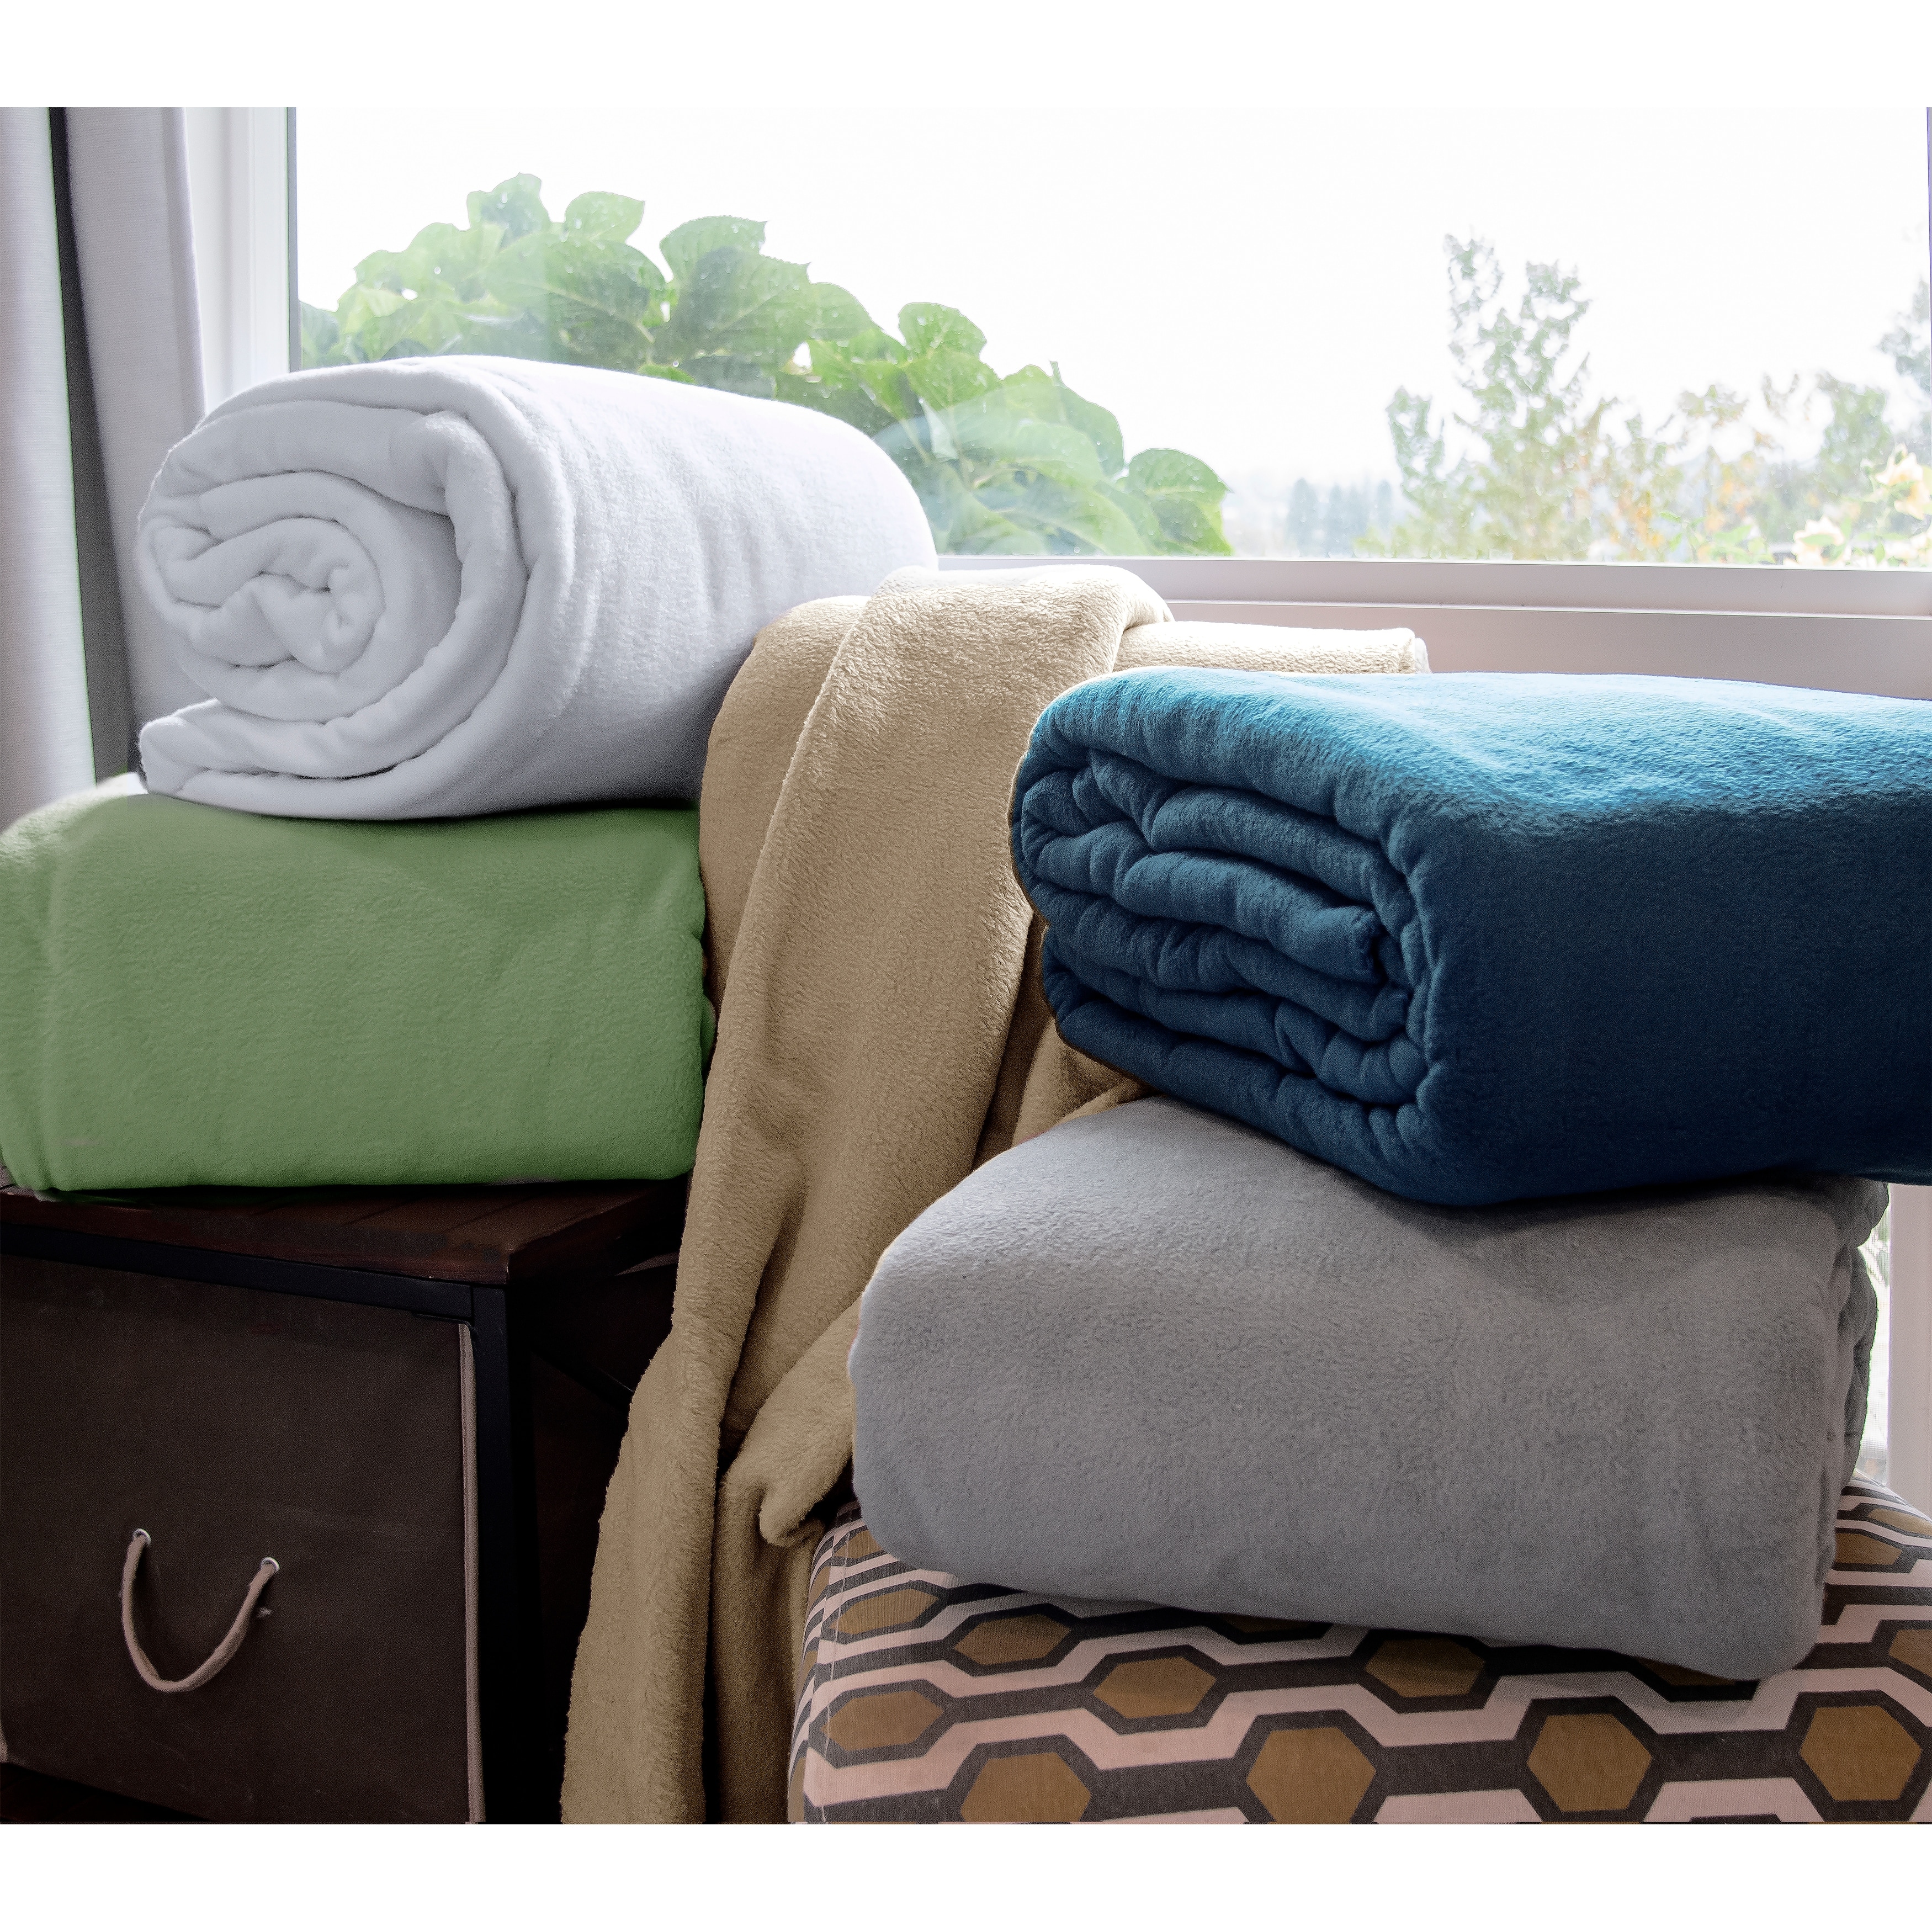 9 Greek Fleece Blanket Kits ideas  sewing fleece, fleece, no sew fleece  blanket